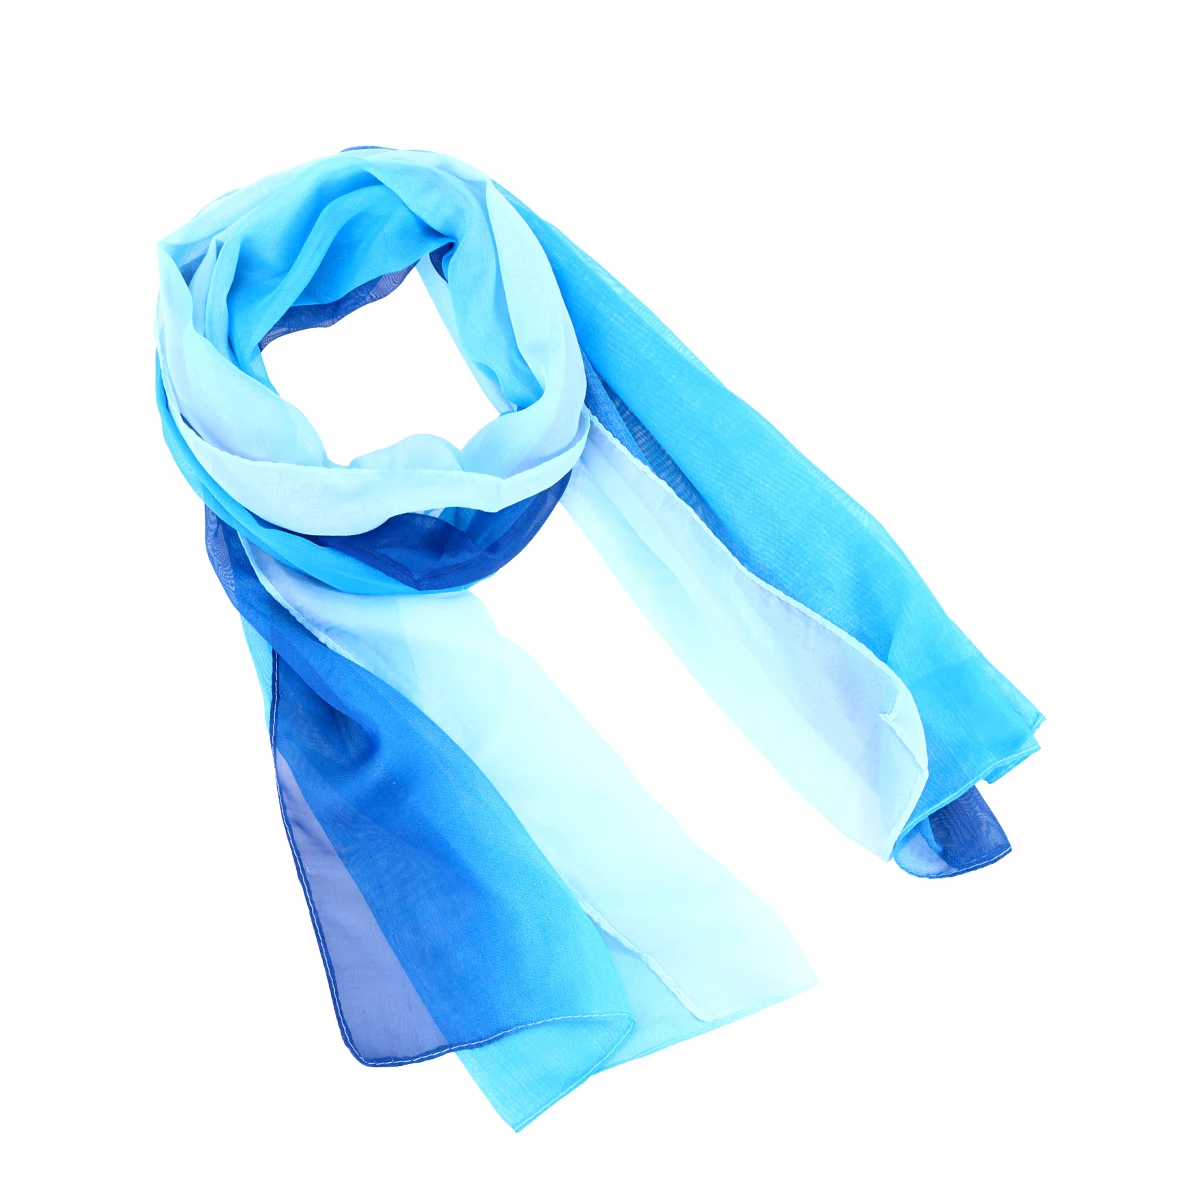 Уникальные женские элегантные шарфы шифоновый шарф цвета градиент(синий и белый